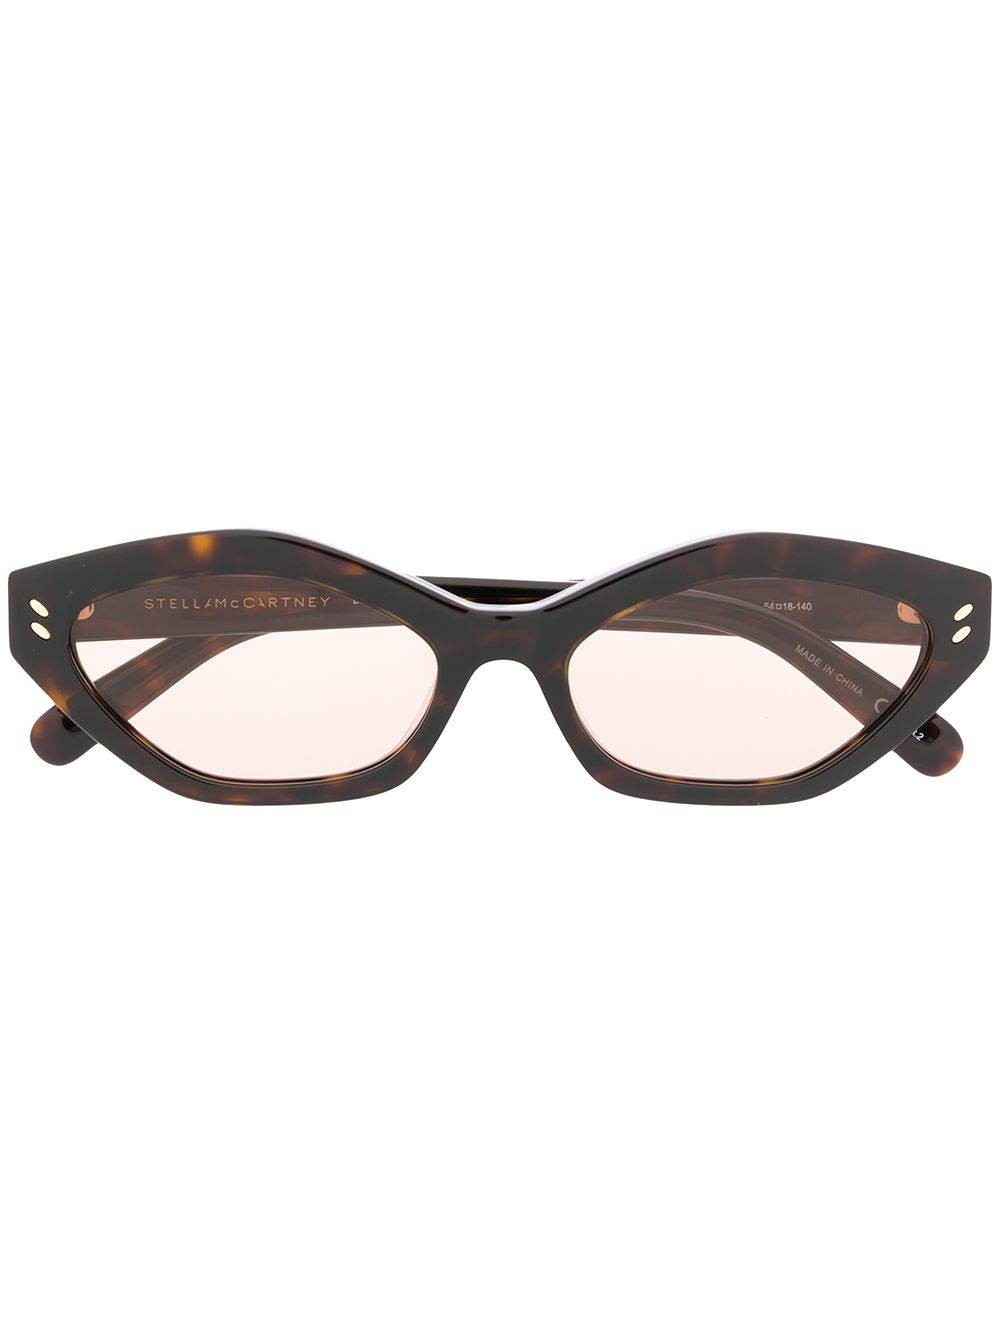 фото Stella McCartney солнцезащитные очки в оправе черепаховой расцветки